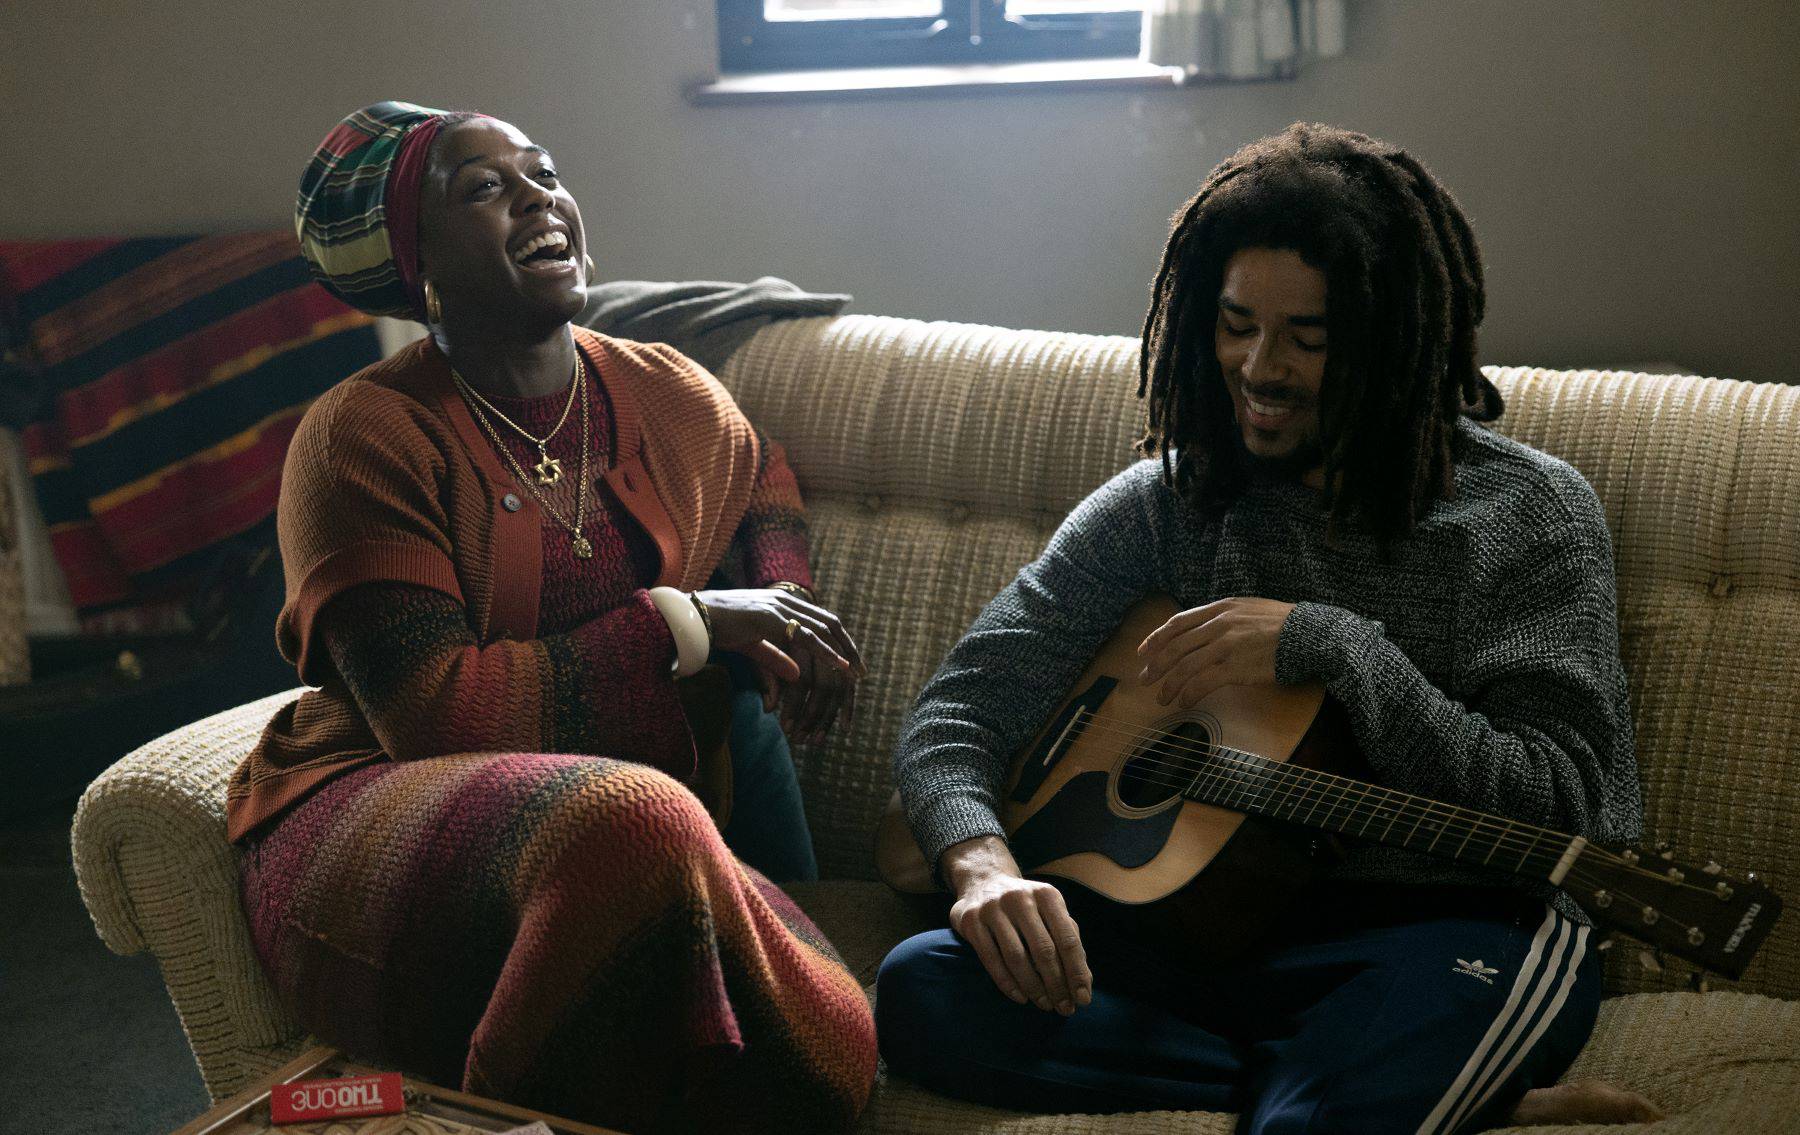 Bob Marley: One Love, film o jednoj od najvećih glazbenih ikona od 14.2. u Cinestar kinima